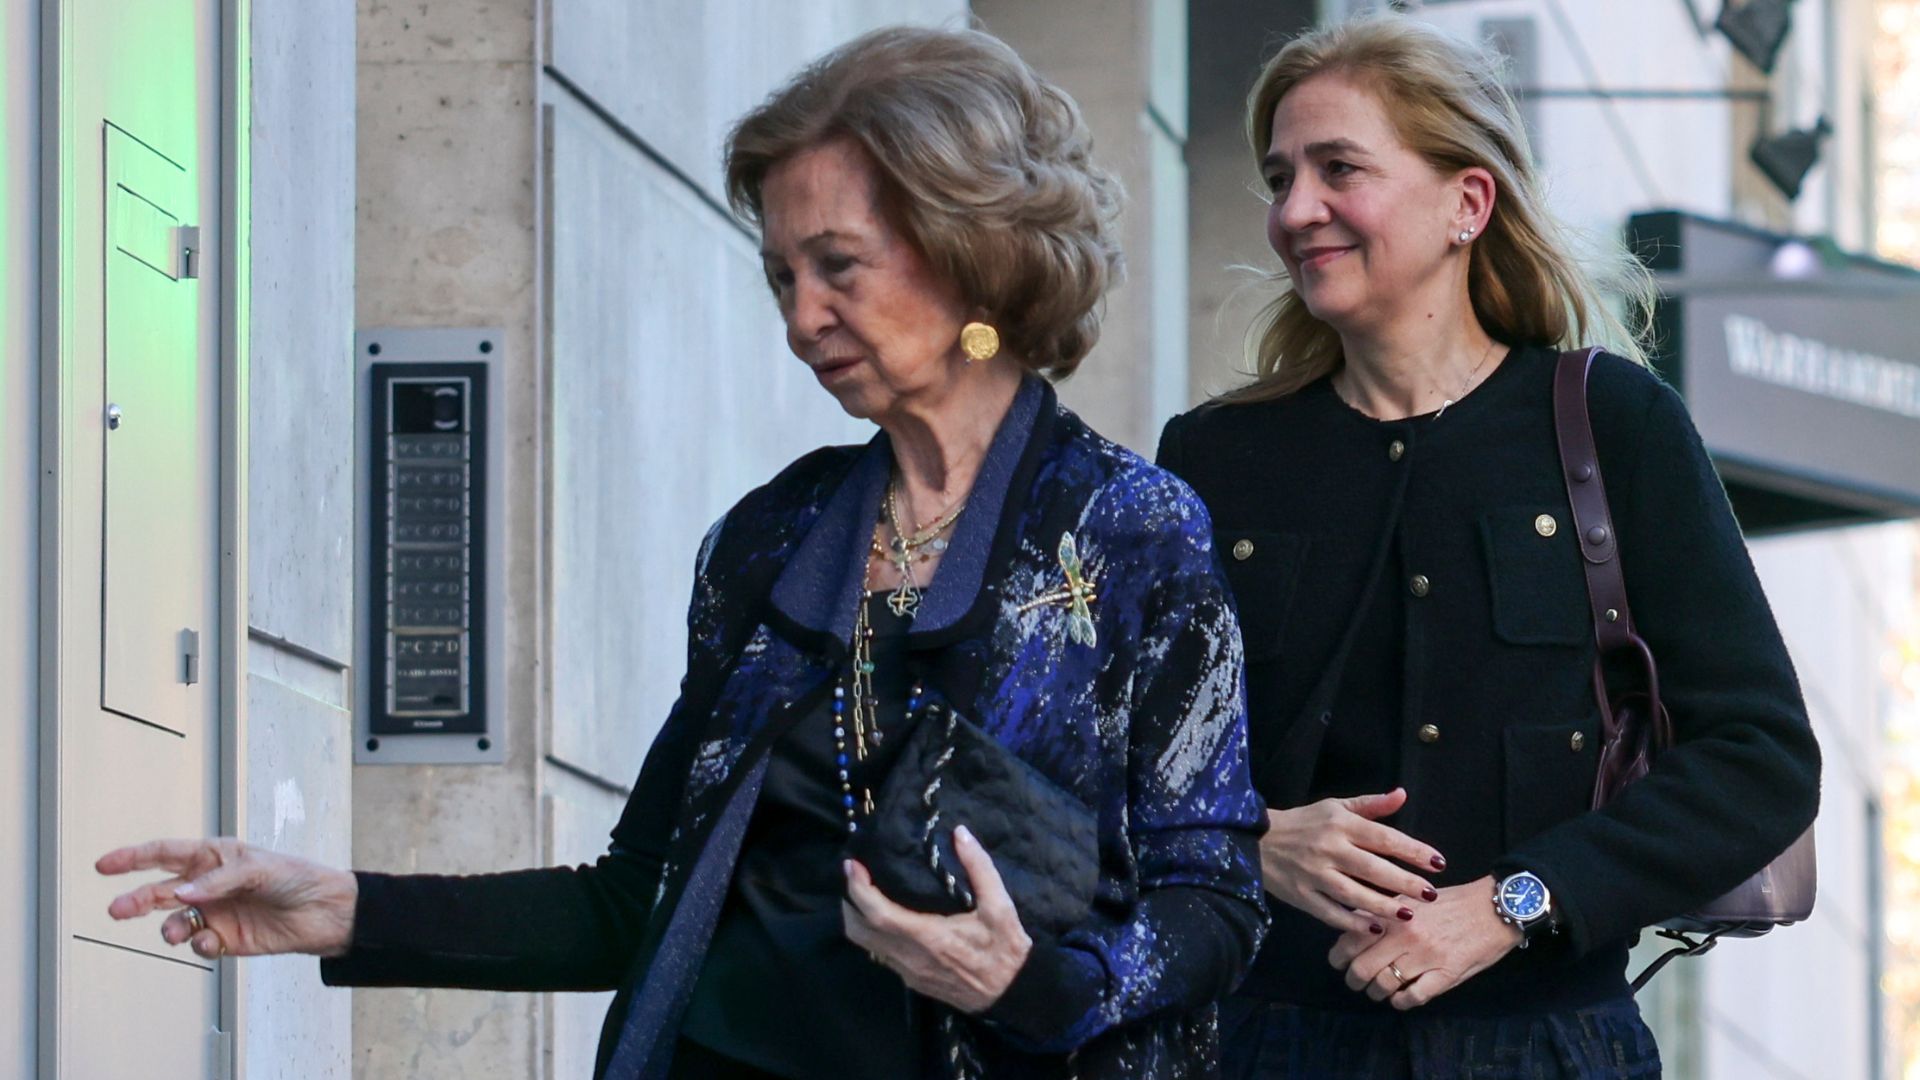 El misterio de la alianza de la Infanta Cristina que aparece y desaparece